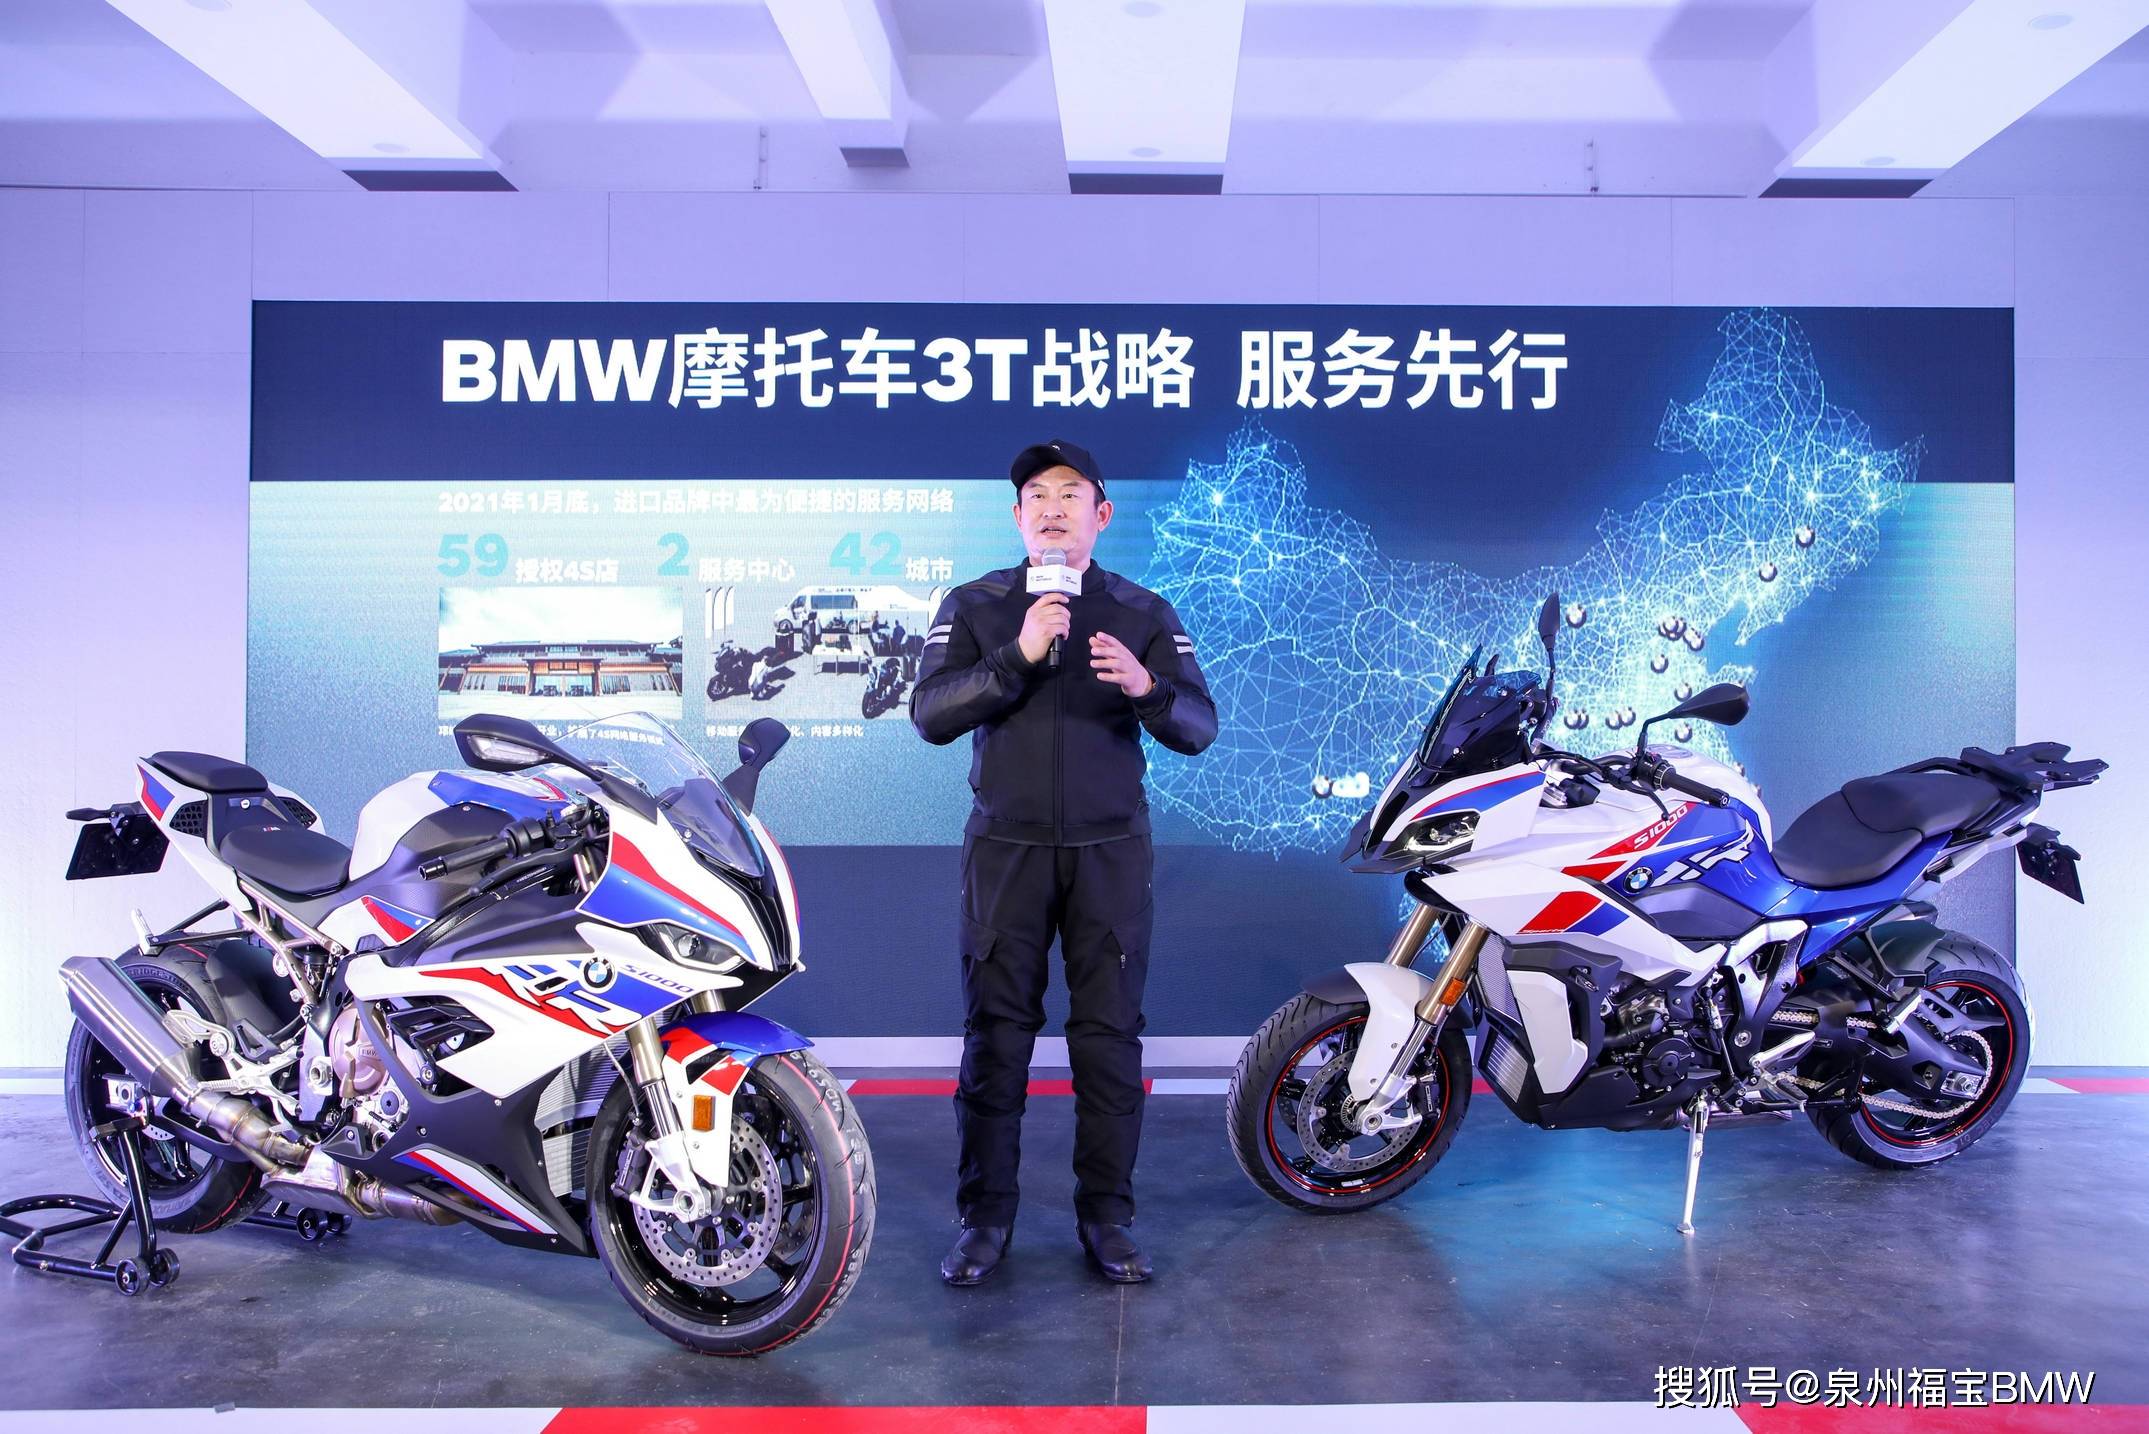 生态可持续 骑行是一种生活 Bmw摩托车持续推进中国 3t战略 骑士